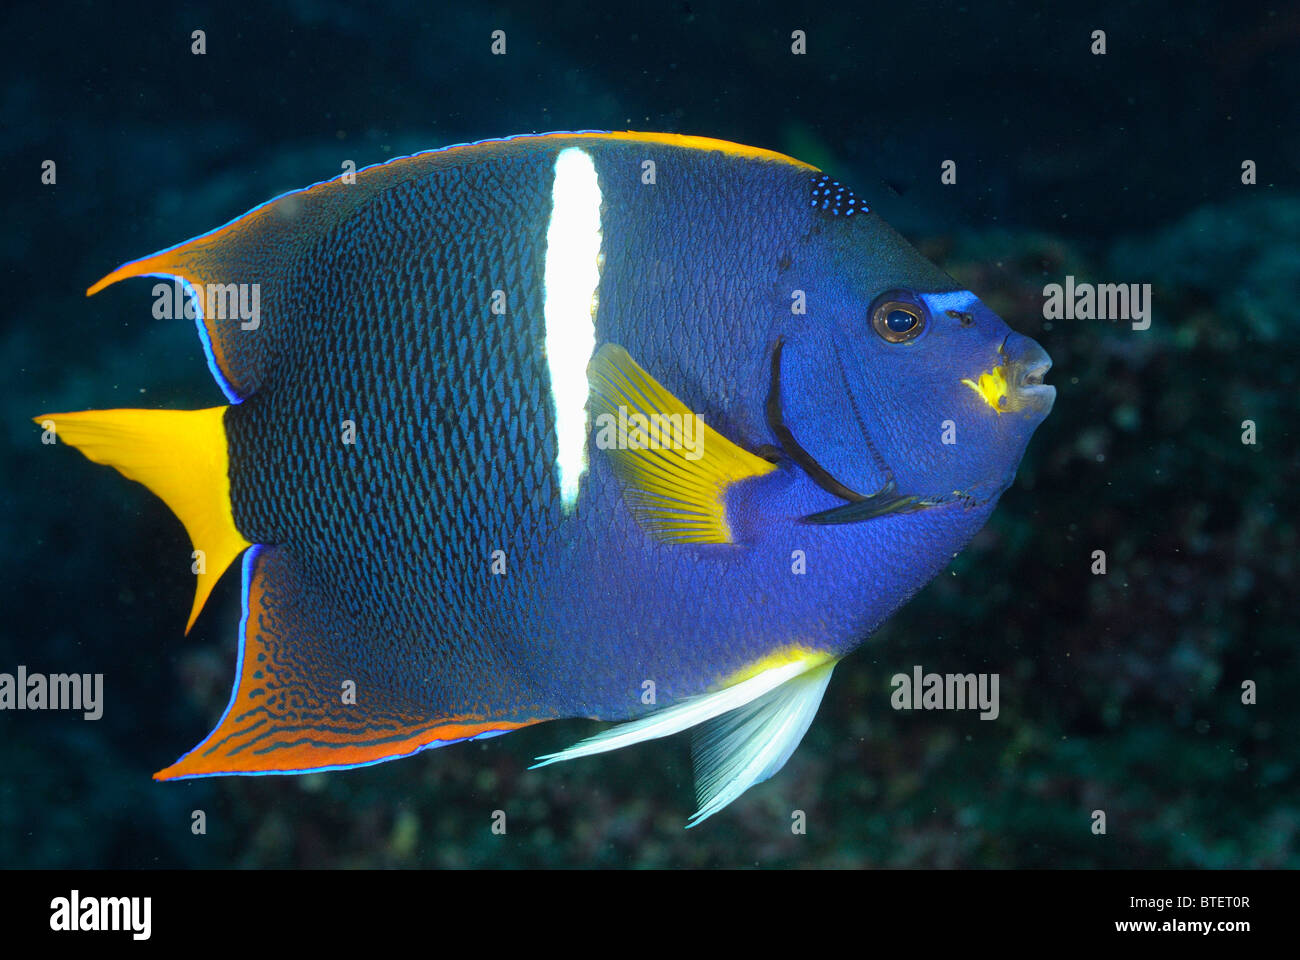 King angelfish, Galapagos, Ecuador Stock Photo